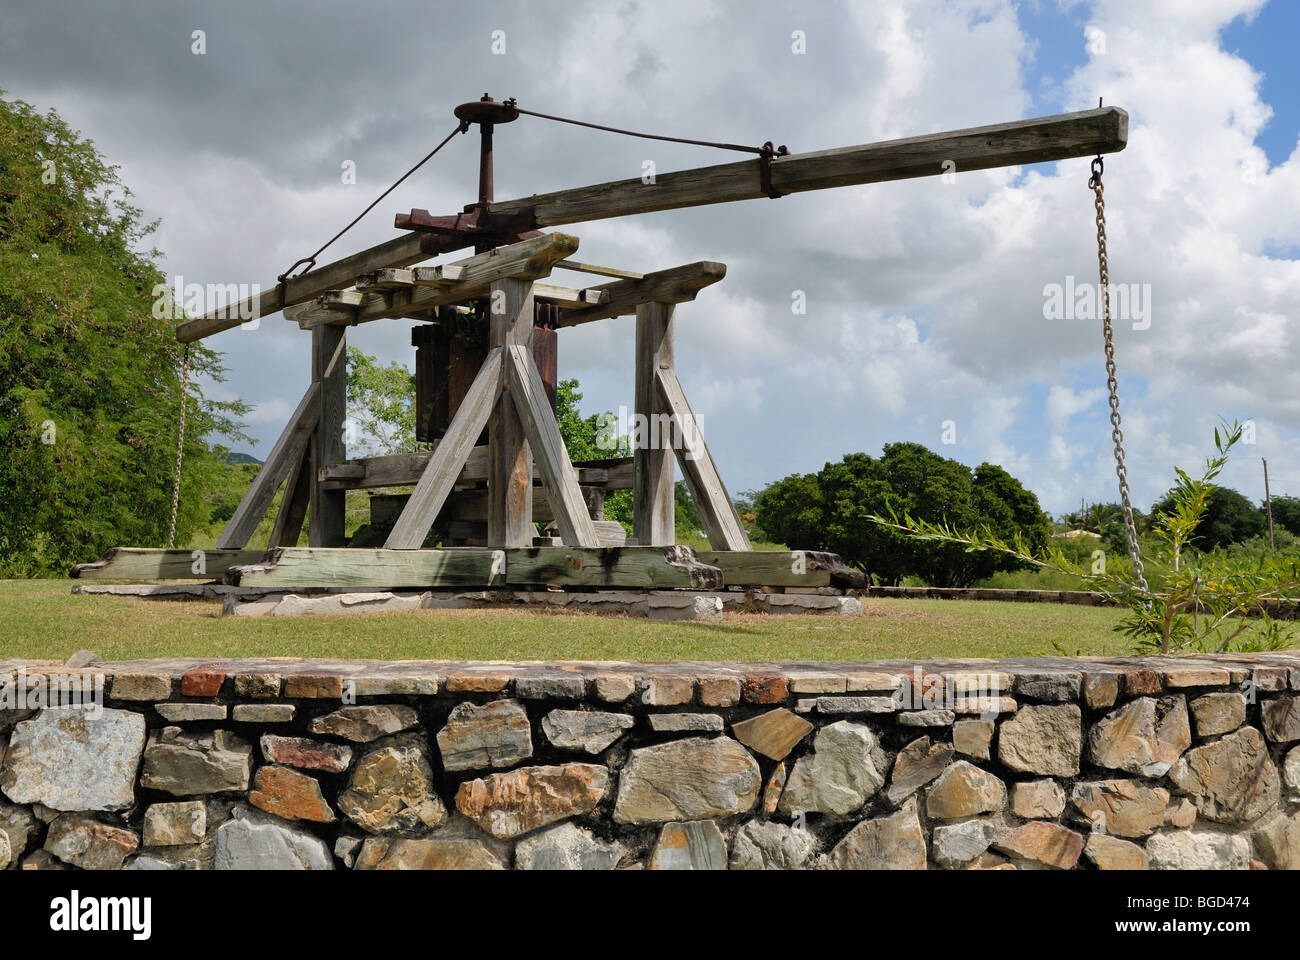 Storico, canna da zucchero premere azionati da animali da tiro, Station Wagon Capriccio Museum, St. Croix island, U.S. Isole Vergini degli Stati Uniti Foto Stock